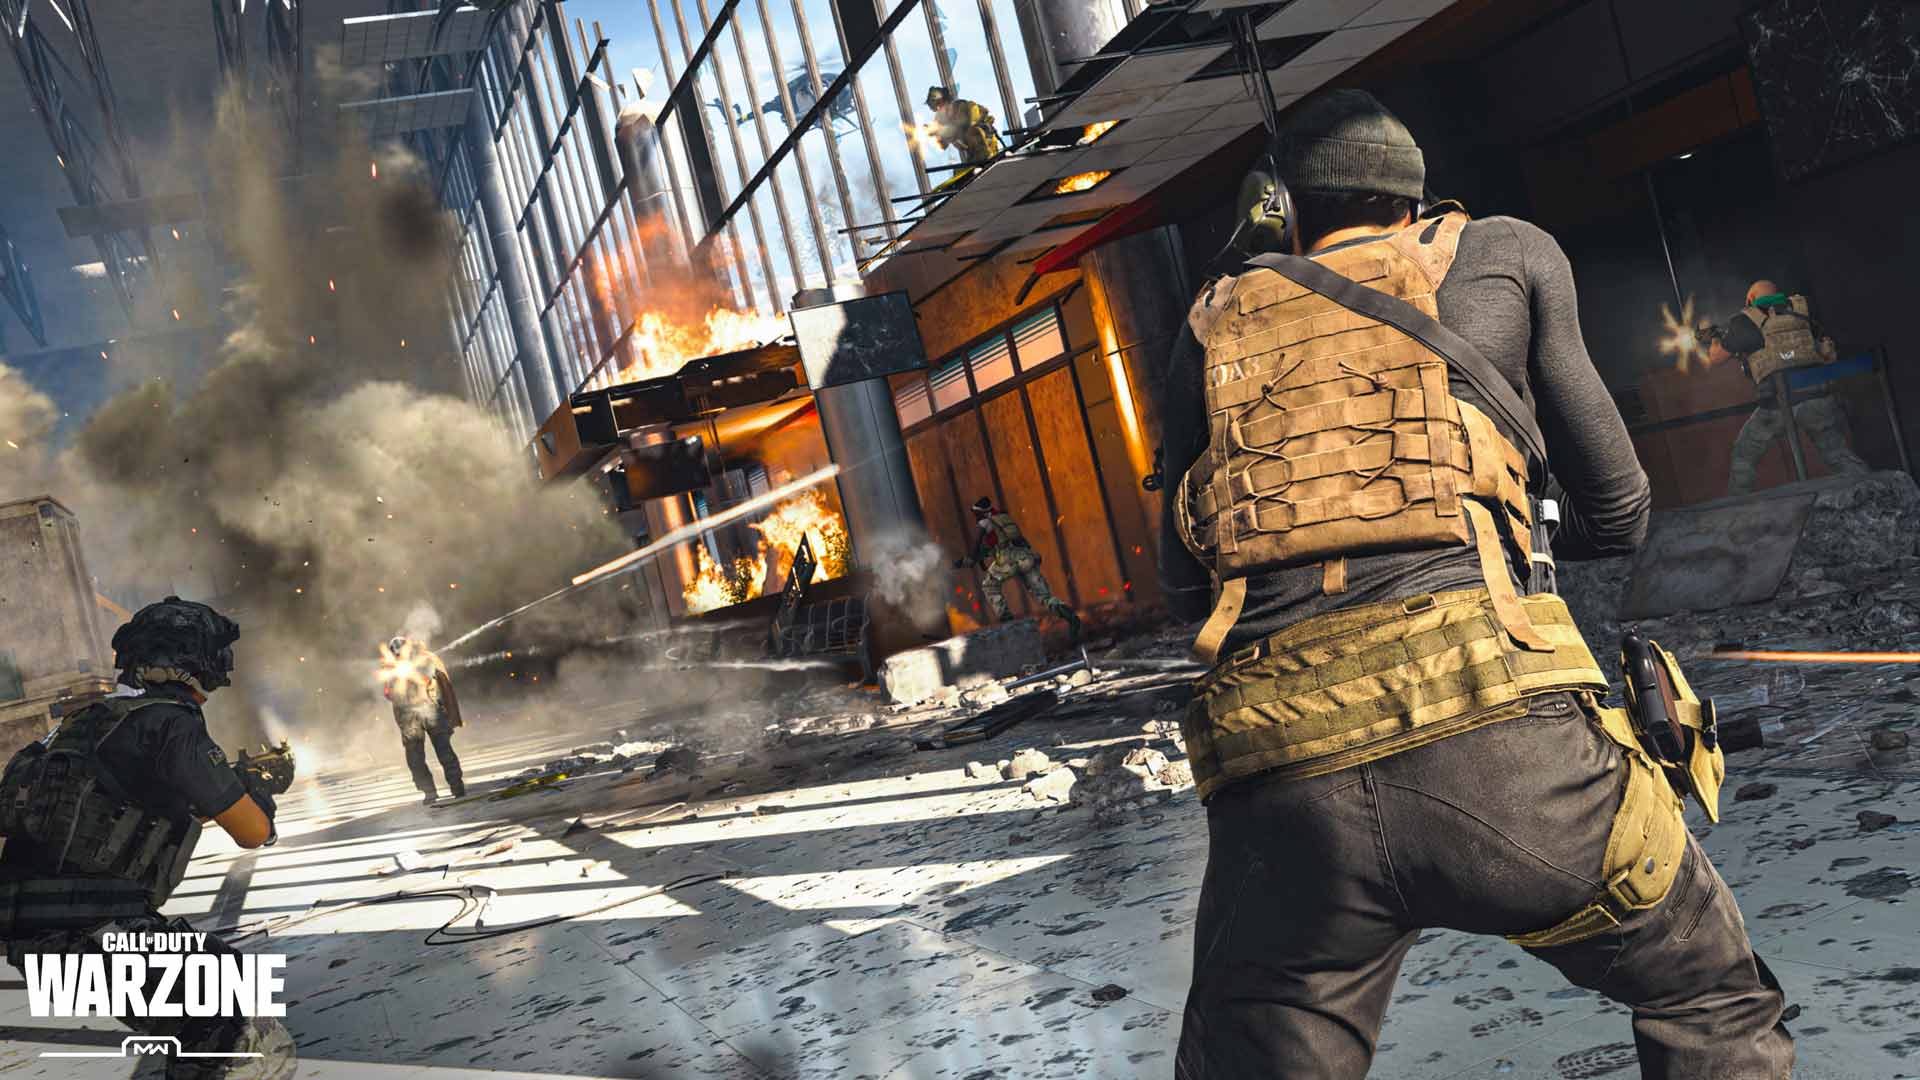 بازی Call of Duty Warzone رویدادهایی به سبک بازی Fortnite خواهد داشت